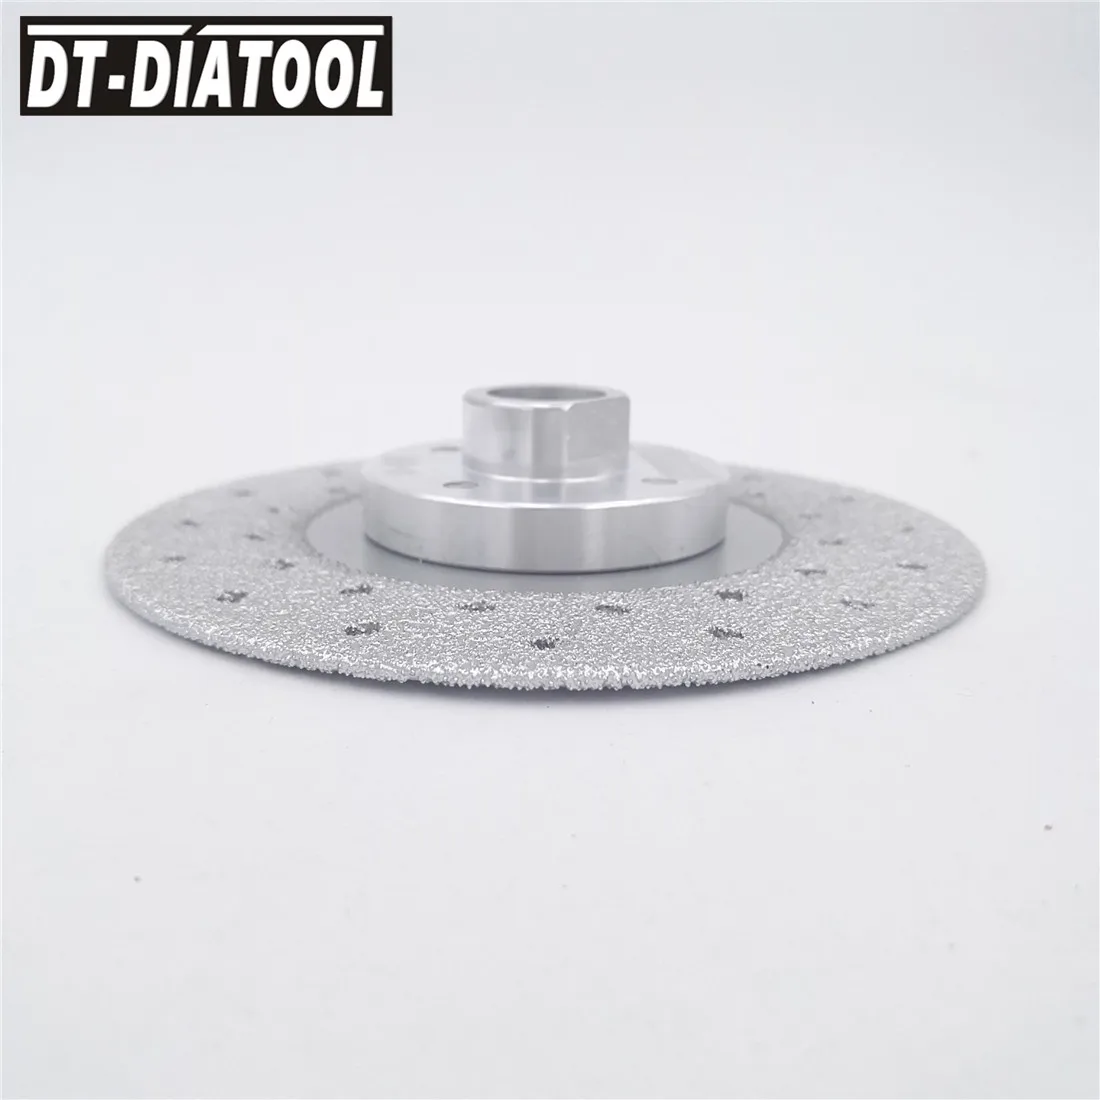 DT-DIATOOL 1 шт. двухсторонний вакуумный паяный Алмазный диск с 5/8-11 фланцем шлифовальный круг пильный диск для гранита и бетона